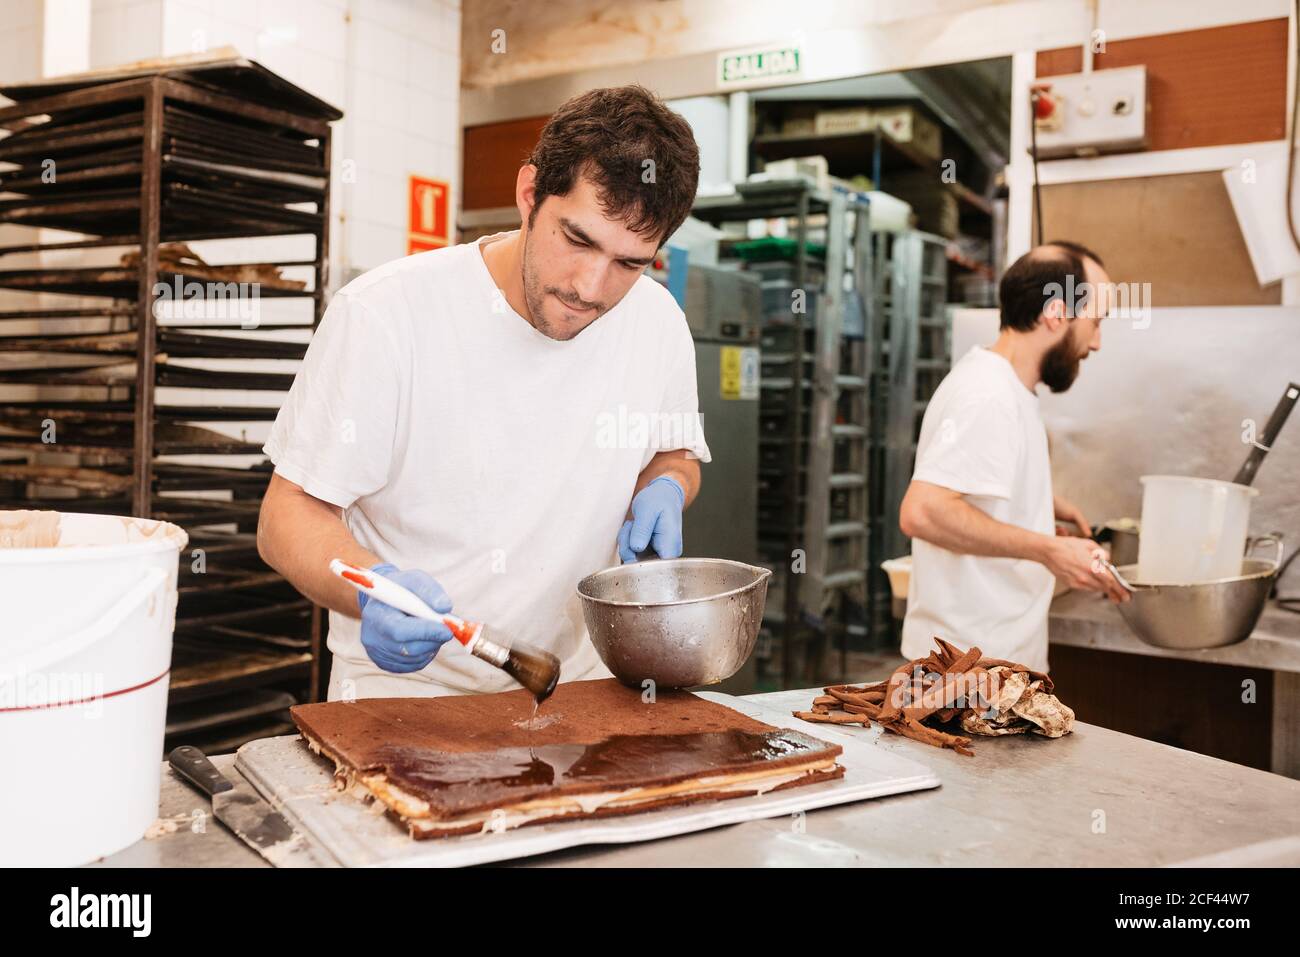 Pâtisserie concentrée faire cuire l'étalement de la garniture de chocolat sur un gâteau savoureux pendant debout près de la table dans la boulangerie Banque D'Images